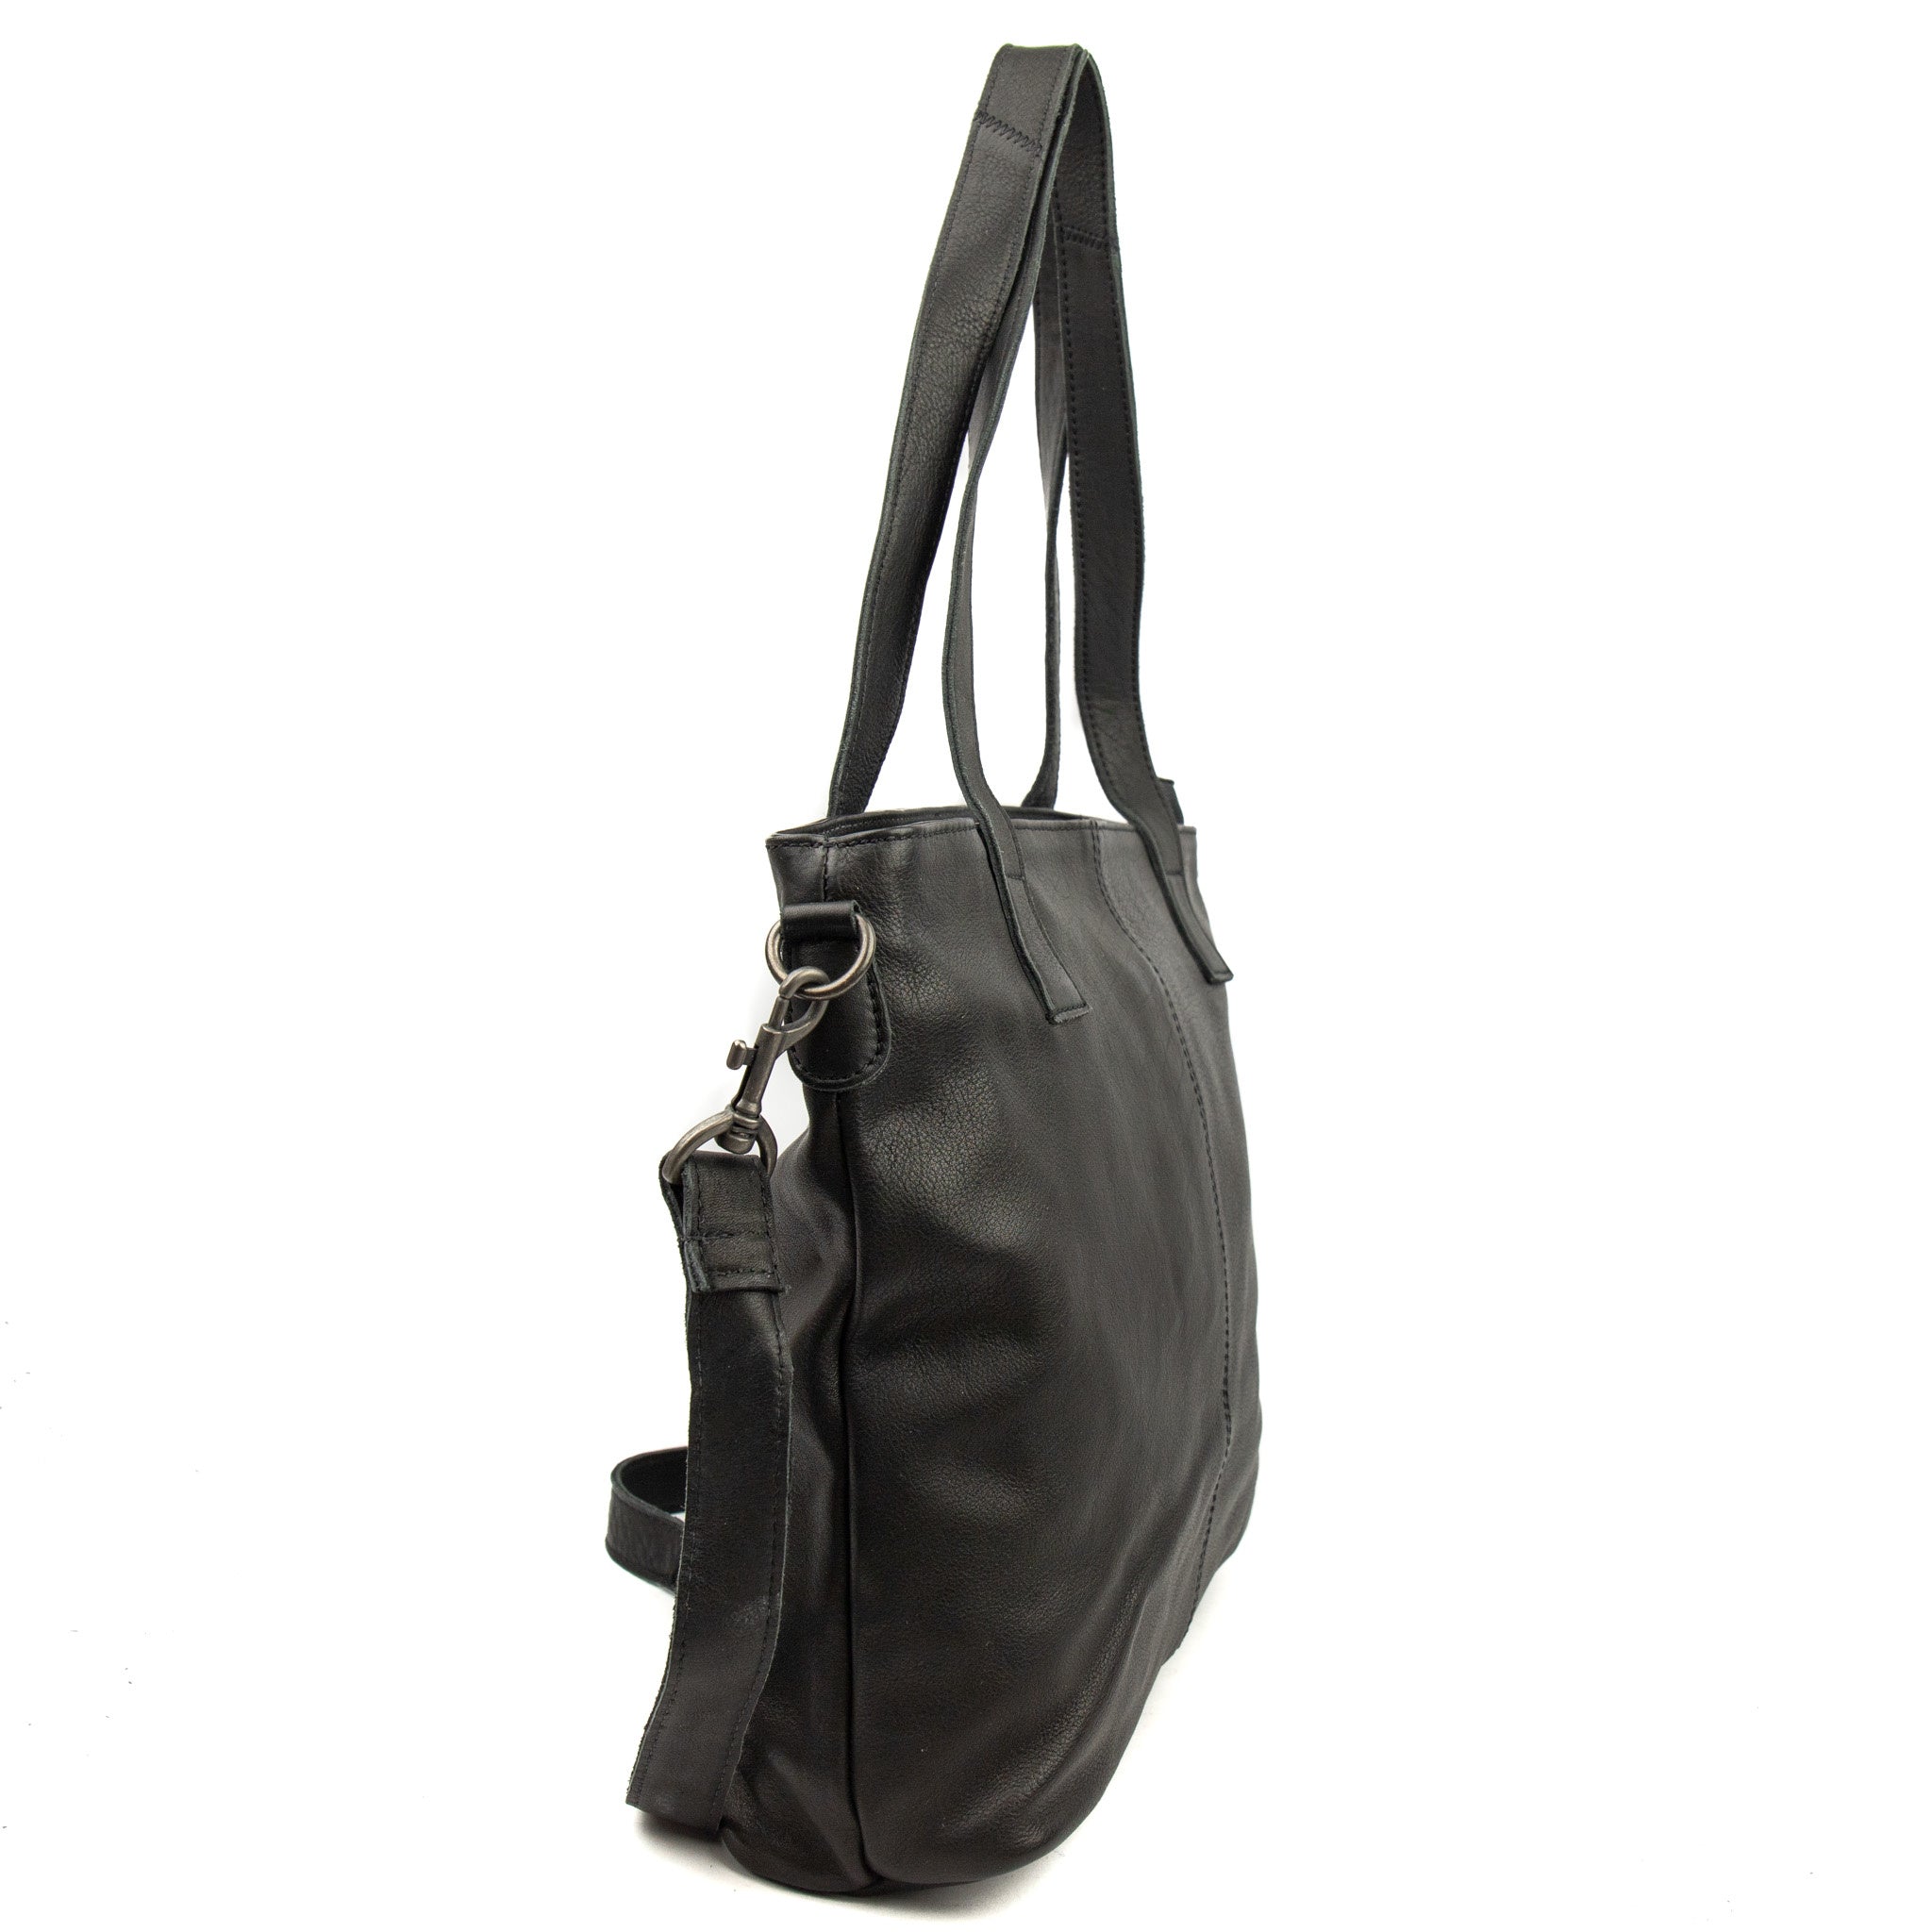 Hand/shoulder bag 'Jilke' black - CP 2150